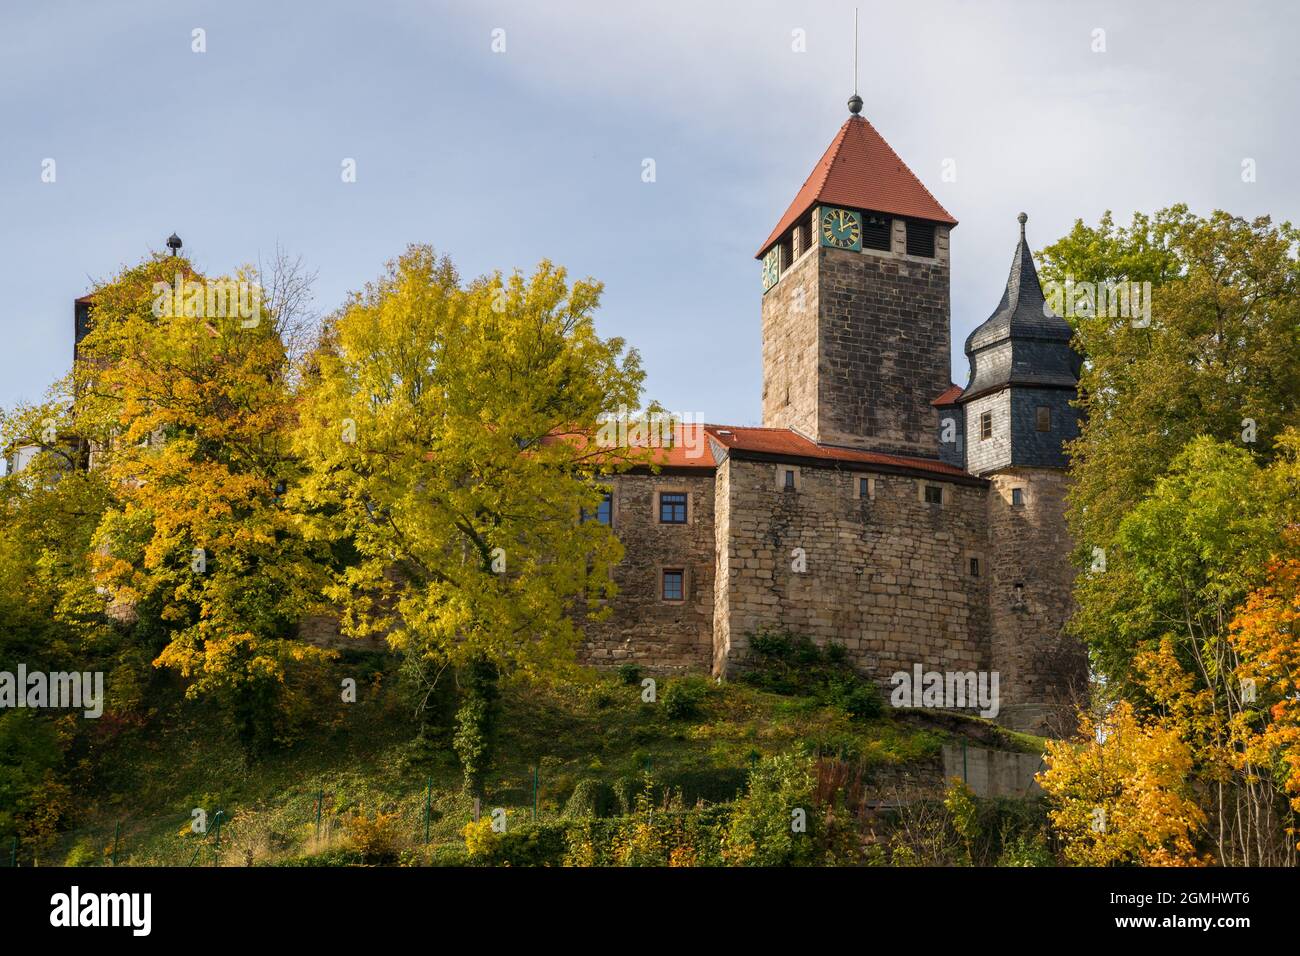 Il ben conservato Castello di Elgersburg, nelle vicinanze di Ilmenau, nel cuore della Turingia, risale al 1088. Foto scattata in autunno in un pomeriggio soleggiato Foto Stock